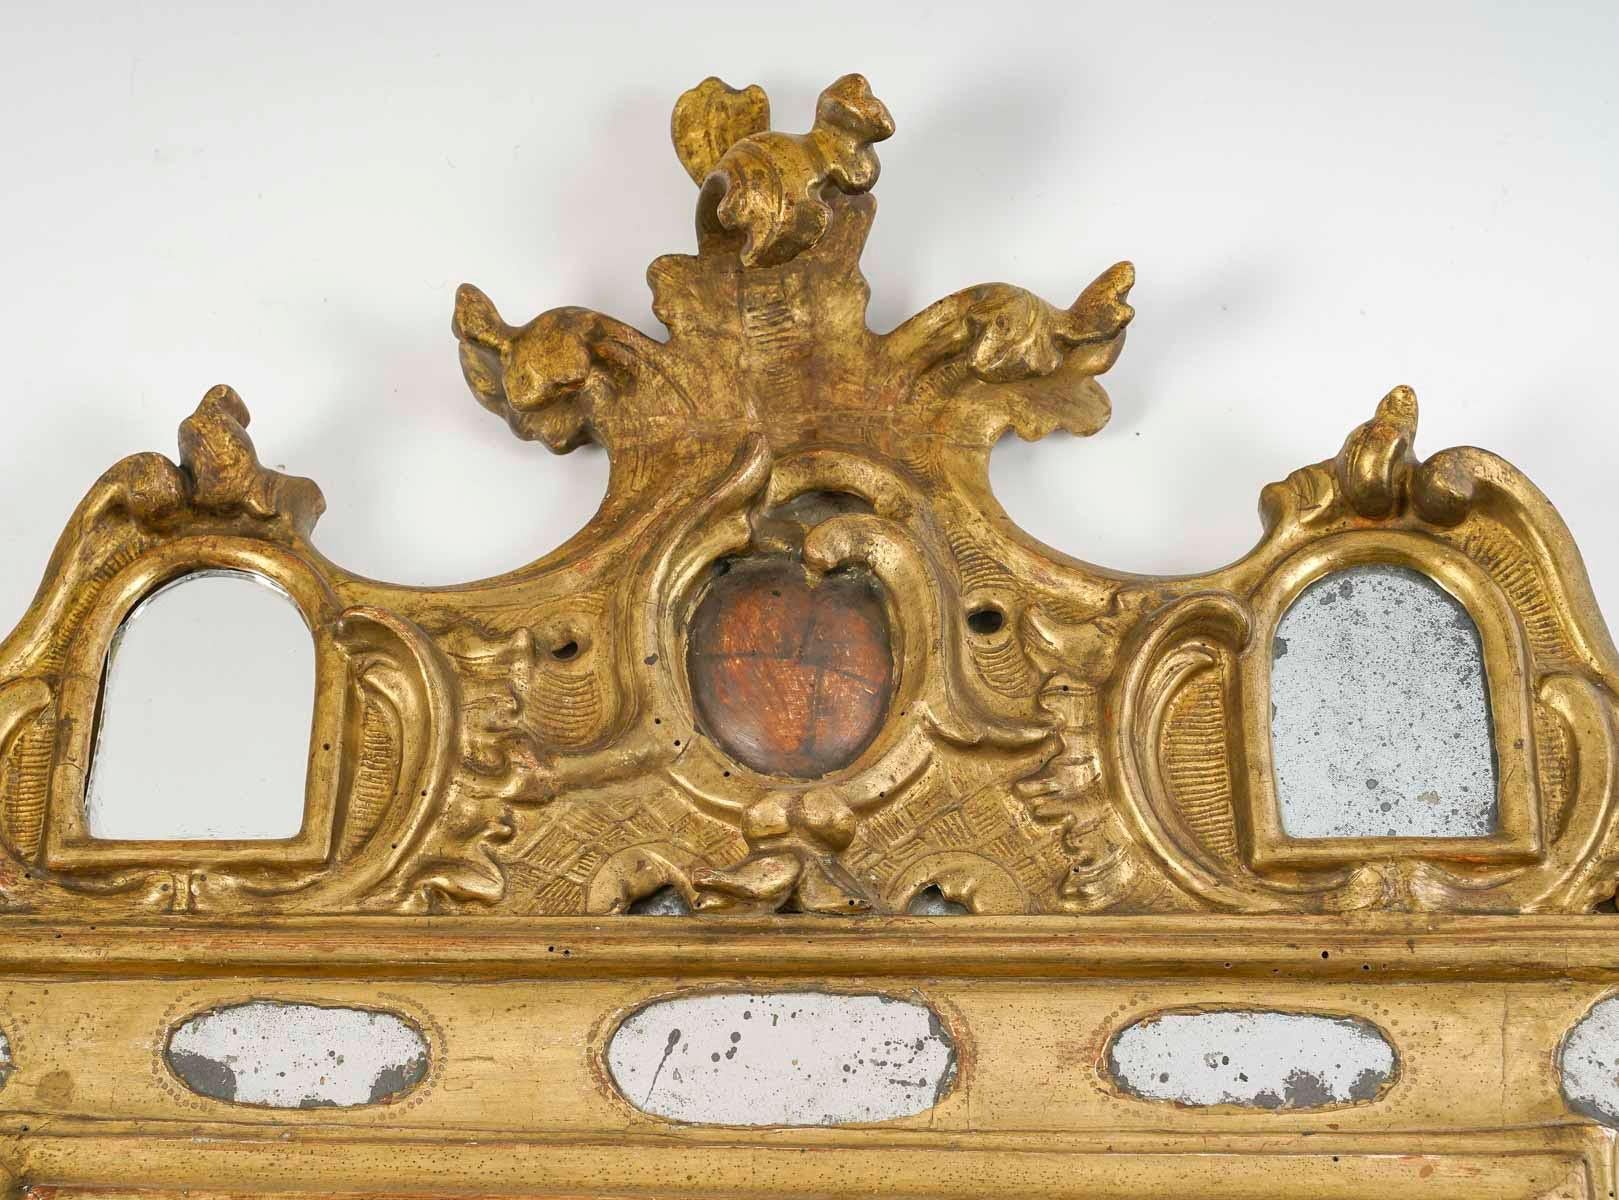 Miroir en bois sculpté et doré du XVIIIe siècle.

Miroir en bois sculpté et doré du XVIIIe siècle avec perles de verre, travail d'Amérique latine ou d'Espagne, ( 2 petits miroirs fendus ).
h : 98cm, w : 71cm, d : 5cm